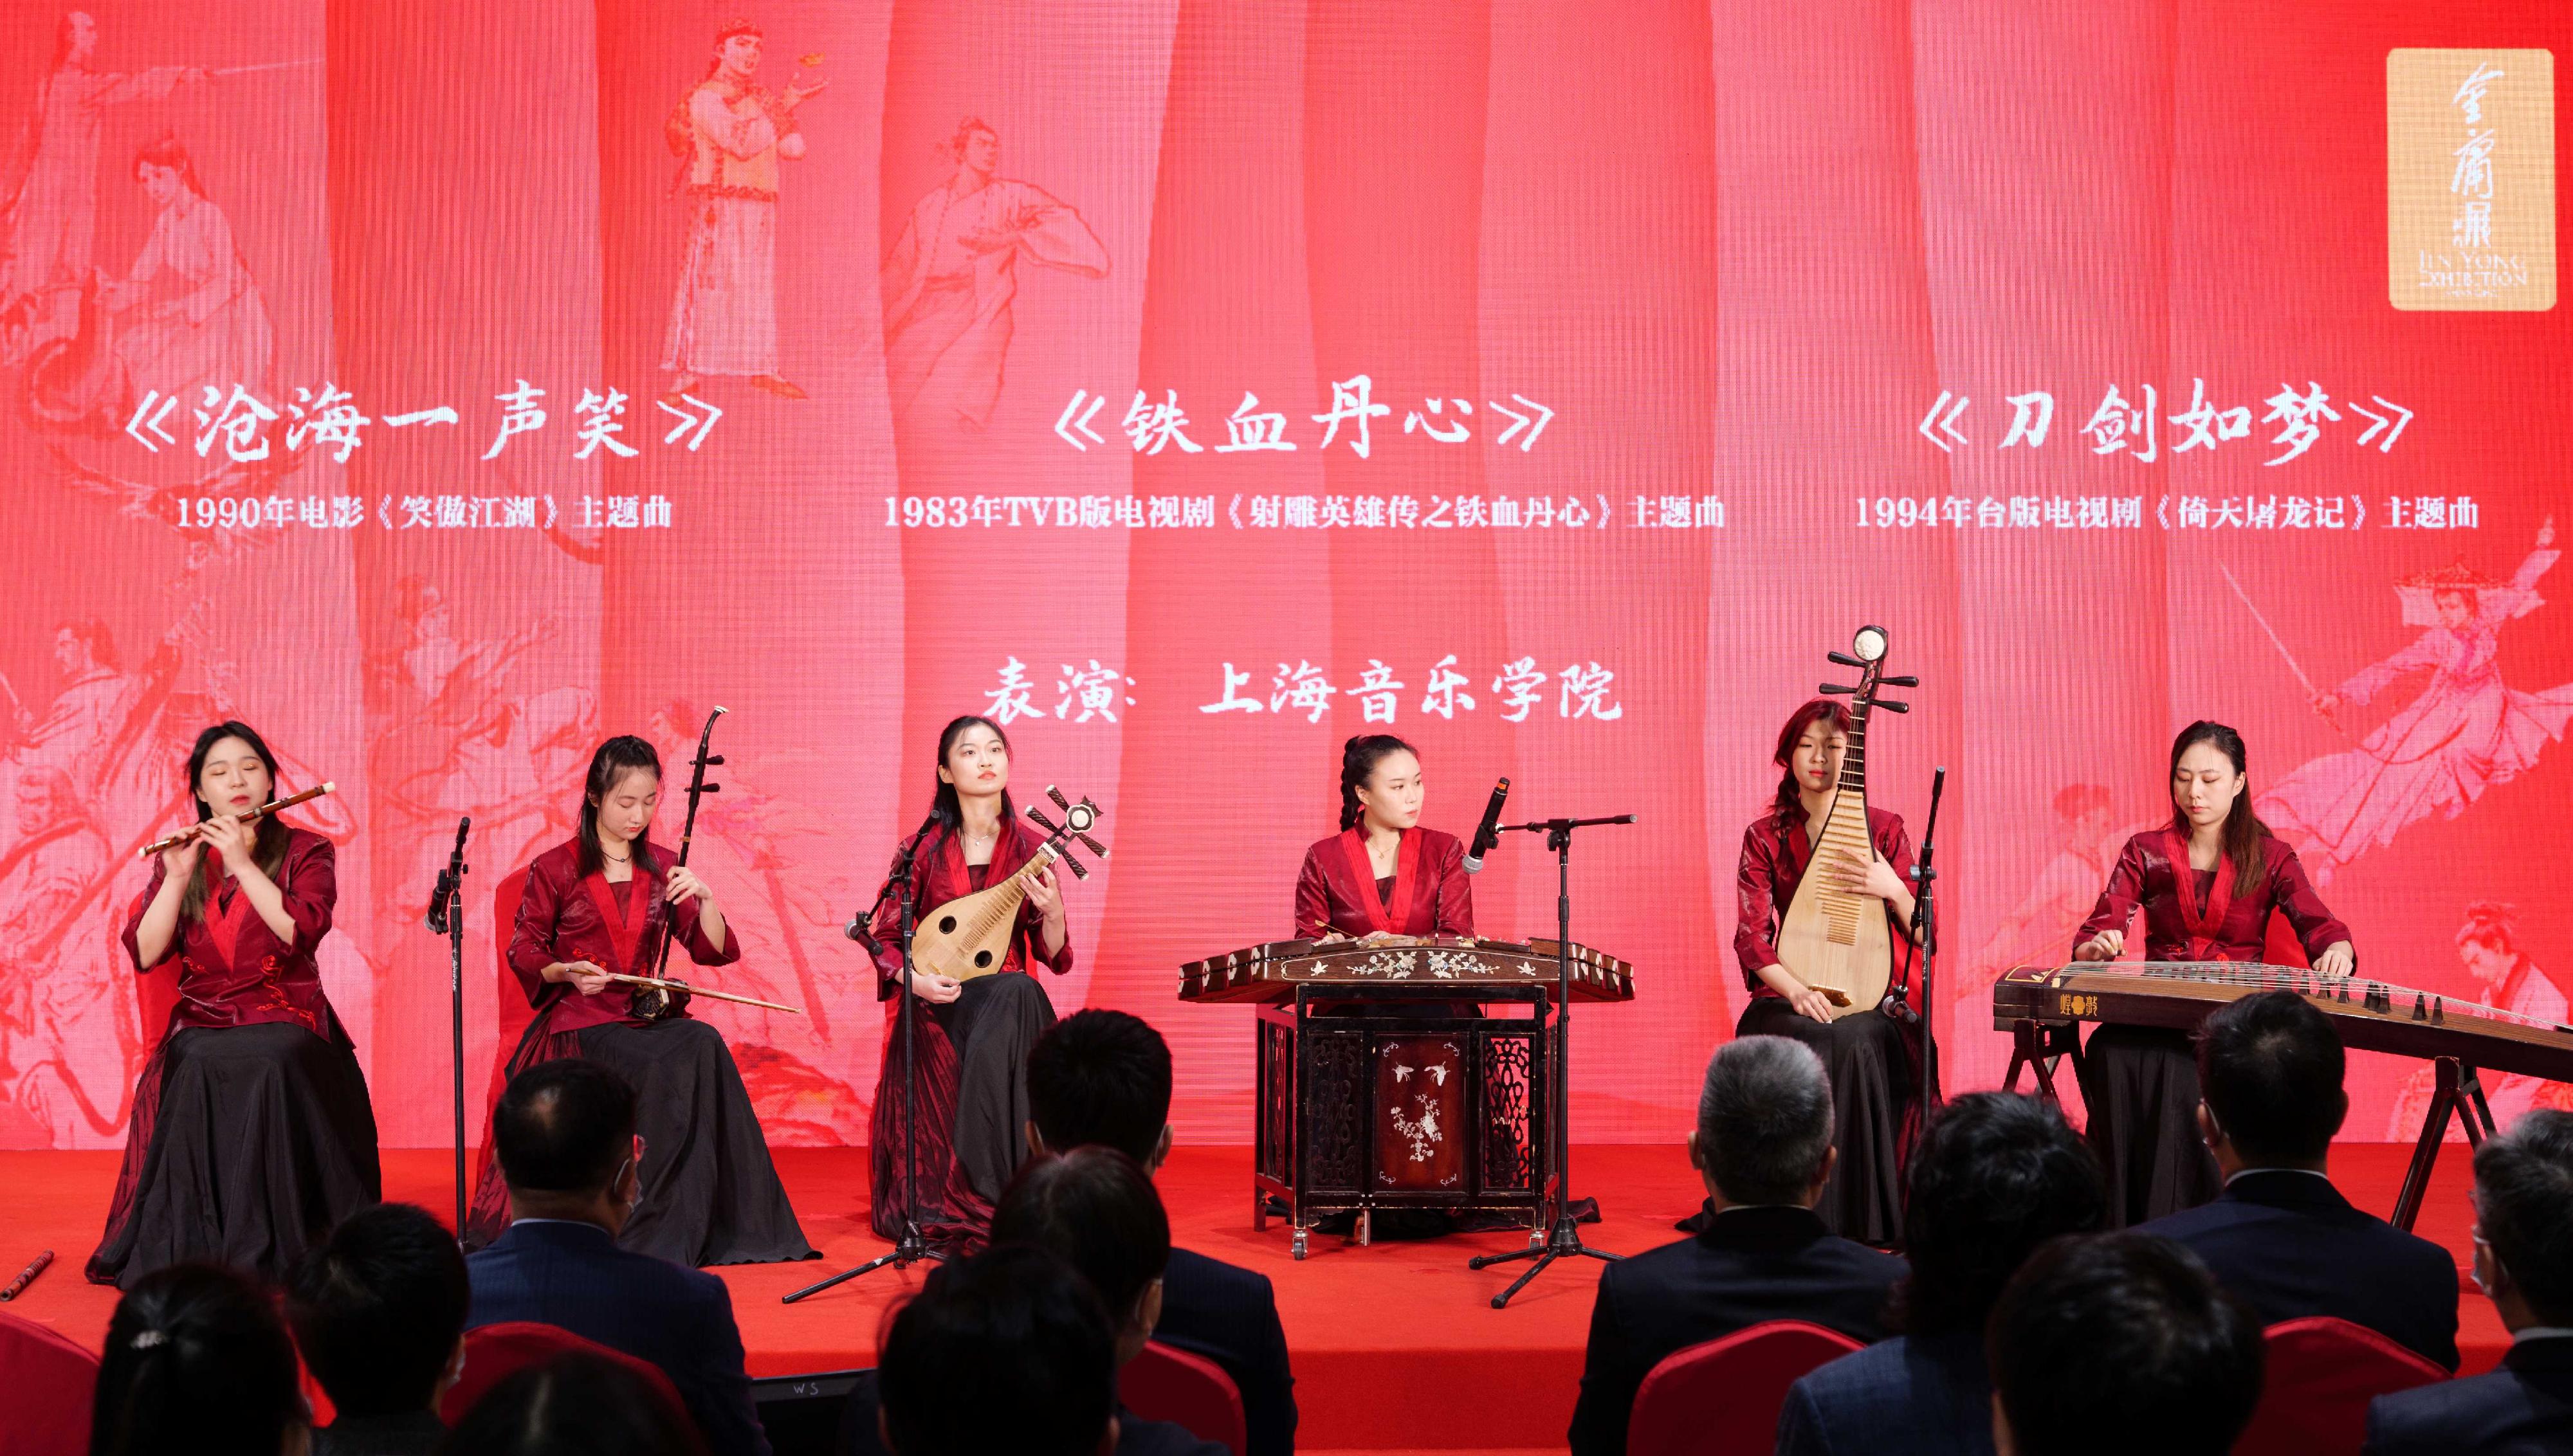 由香港特别行政区政府驻上海经济贸易办事处主办的「金庸展」今日（十月二十八日）于上海市上海图书馆东馆揭幕。图示上海音乐学院的学生在开幕典礼上合奏经典金庸影视金曲。